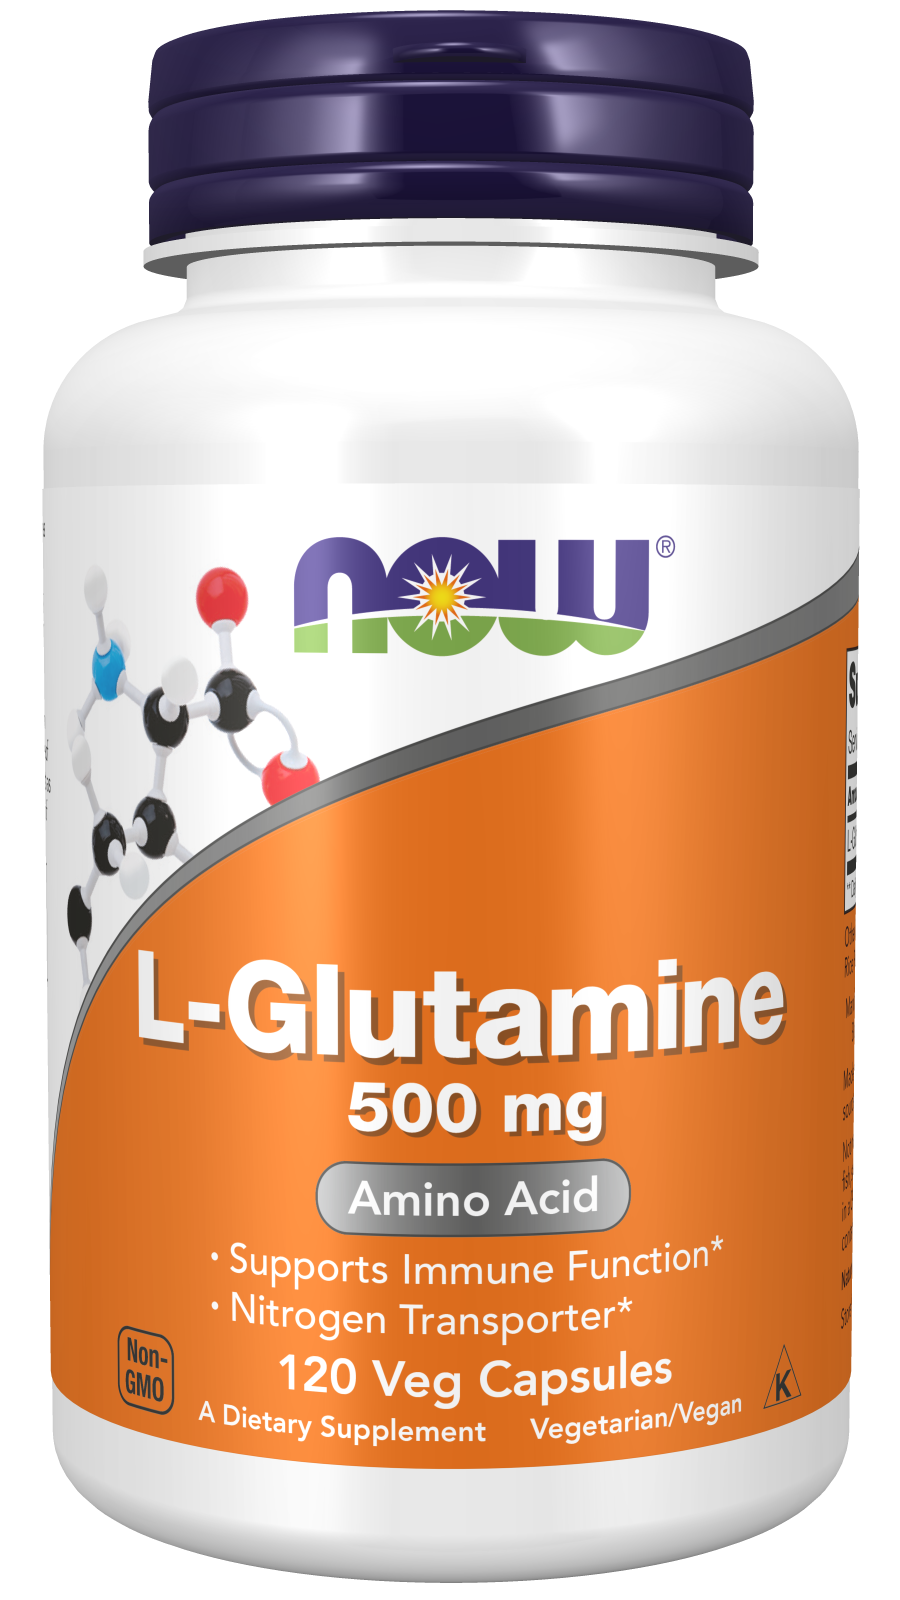 L-Glutamine 500 mg - 120 Veg Capsules Bottle Front